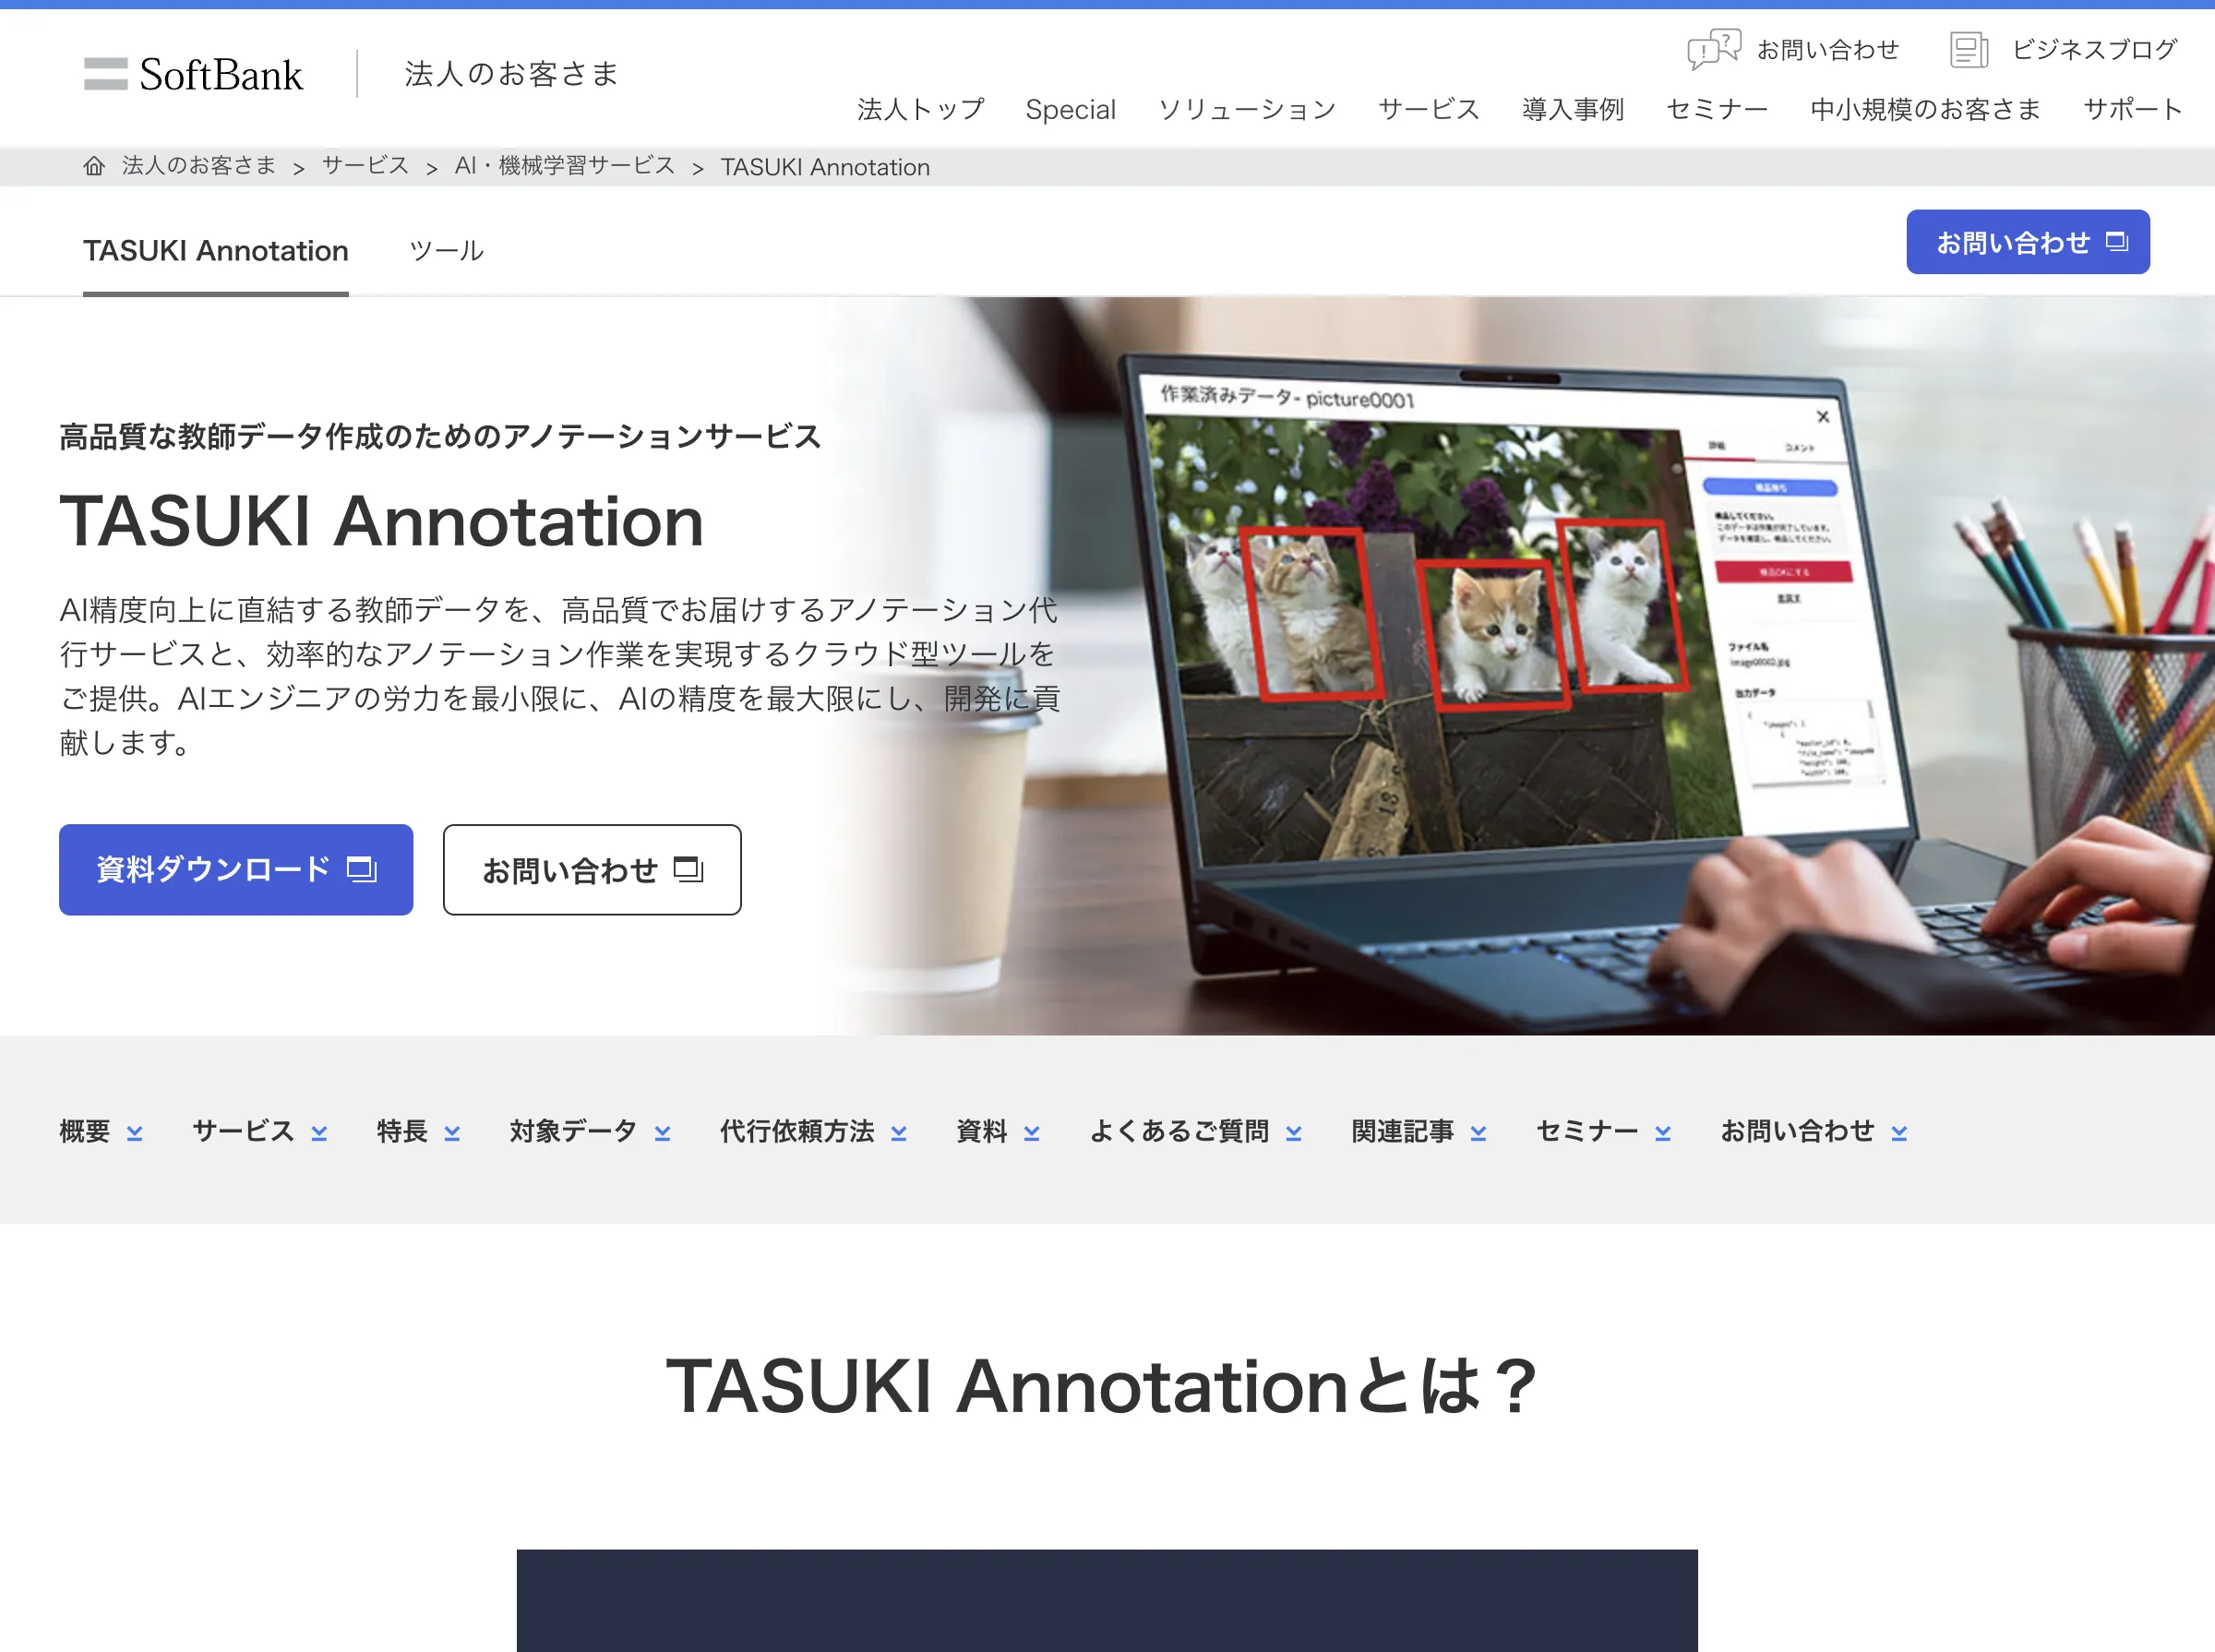 TASUKI アノテーション(ソフトバンク株式会社)